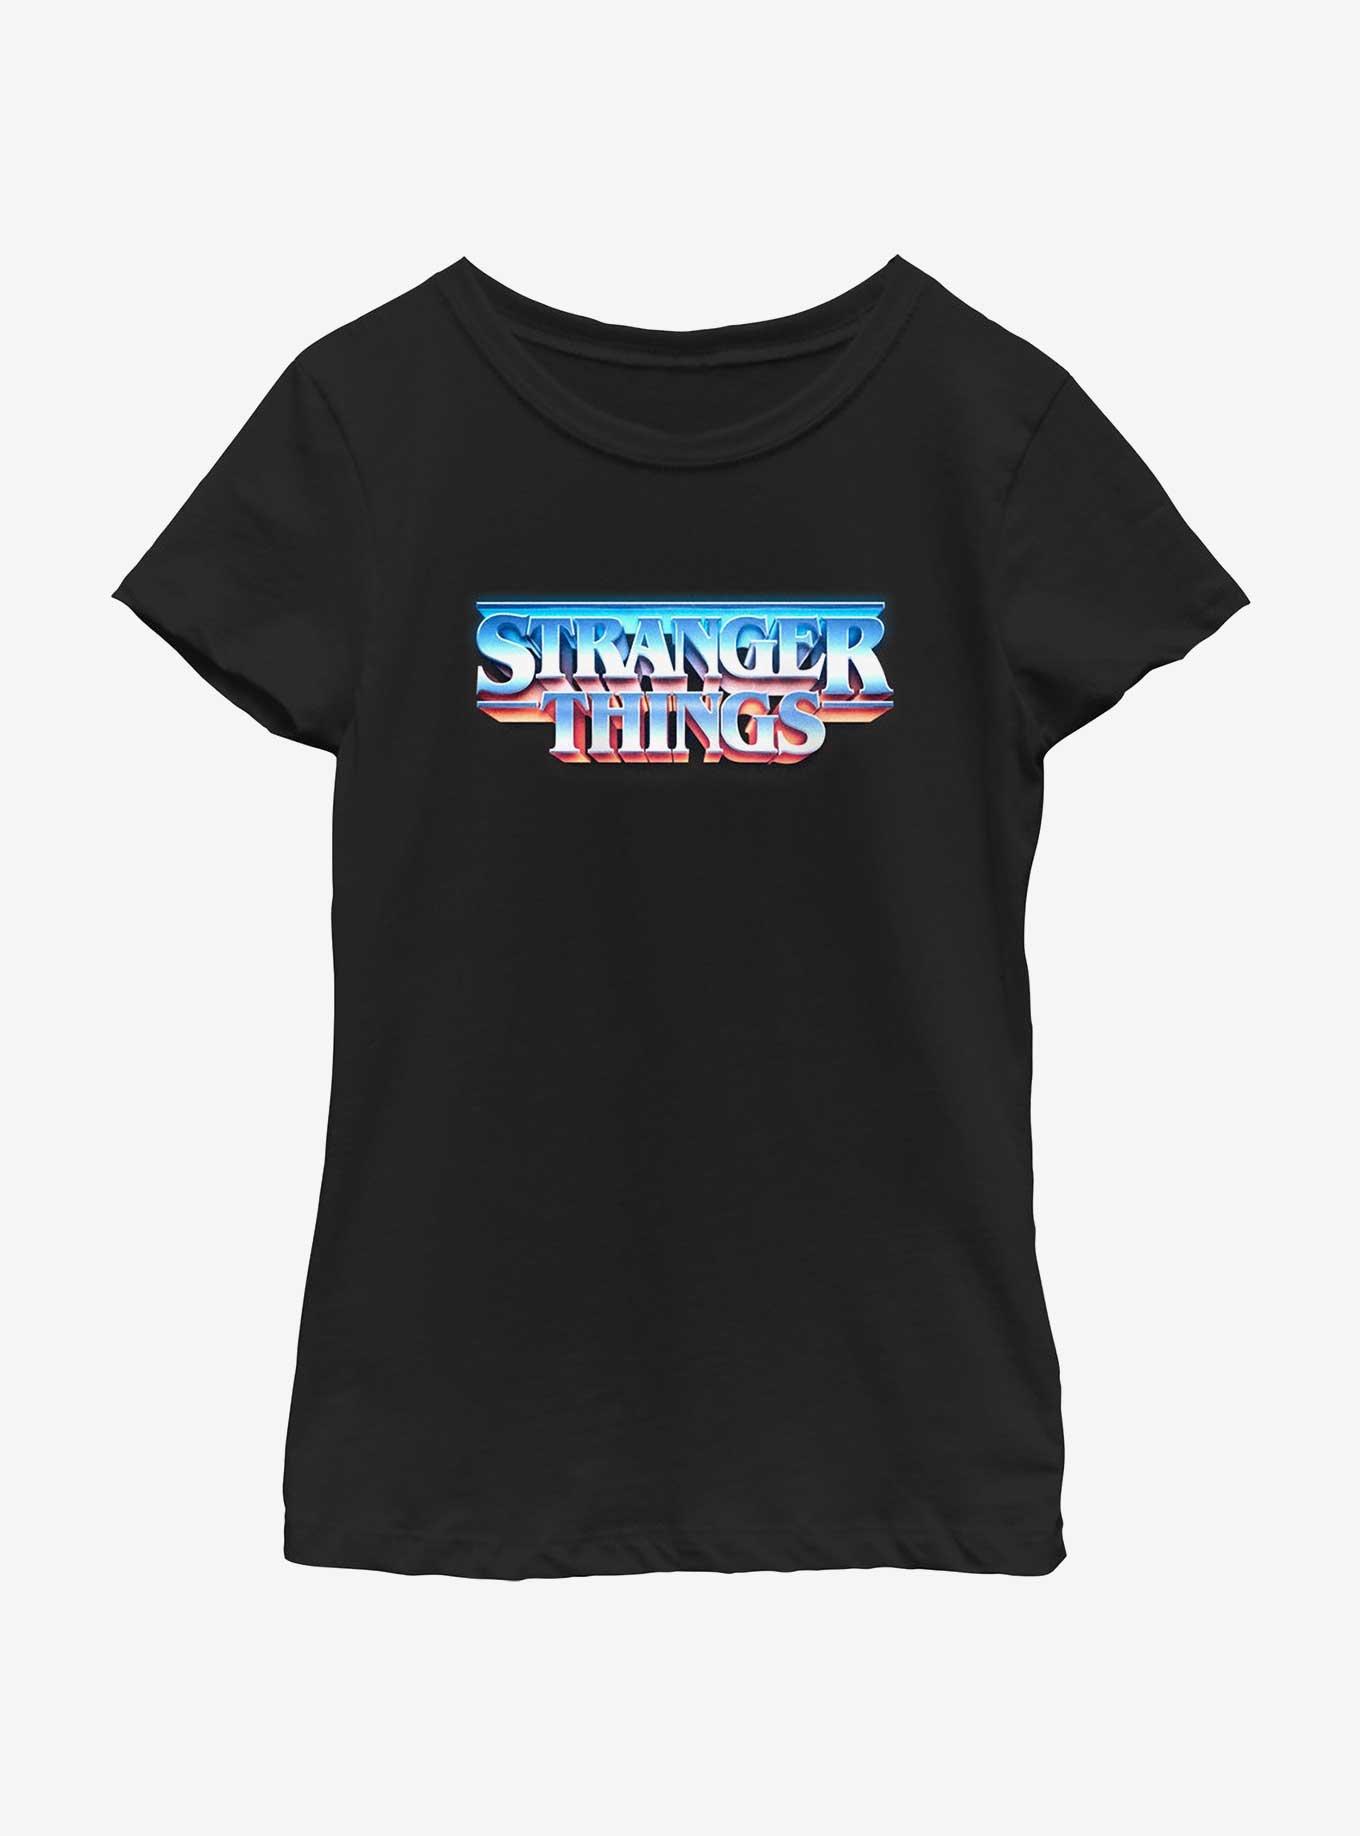 Stranger Things Metal Retro Logo Youth Girls T-Shirt, BLACK, hi-res